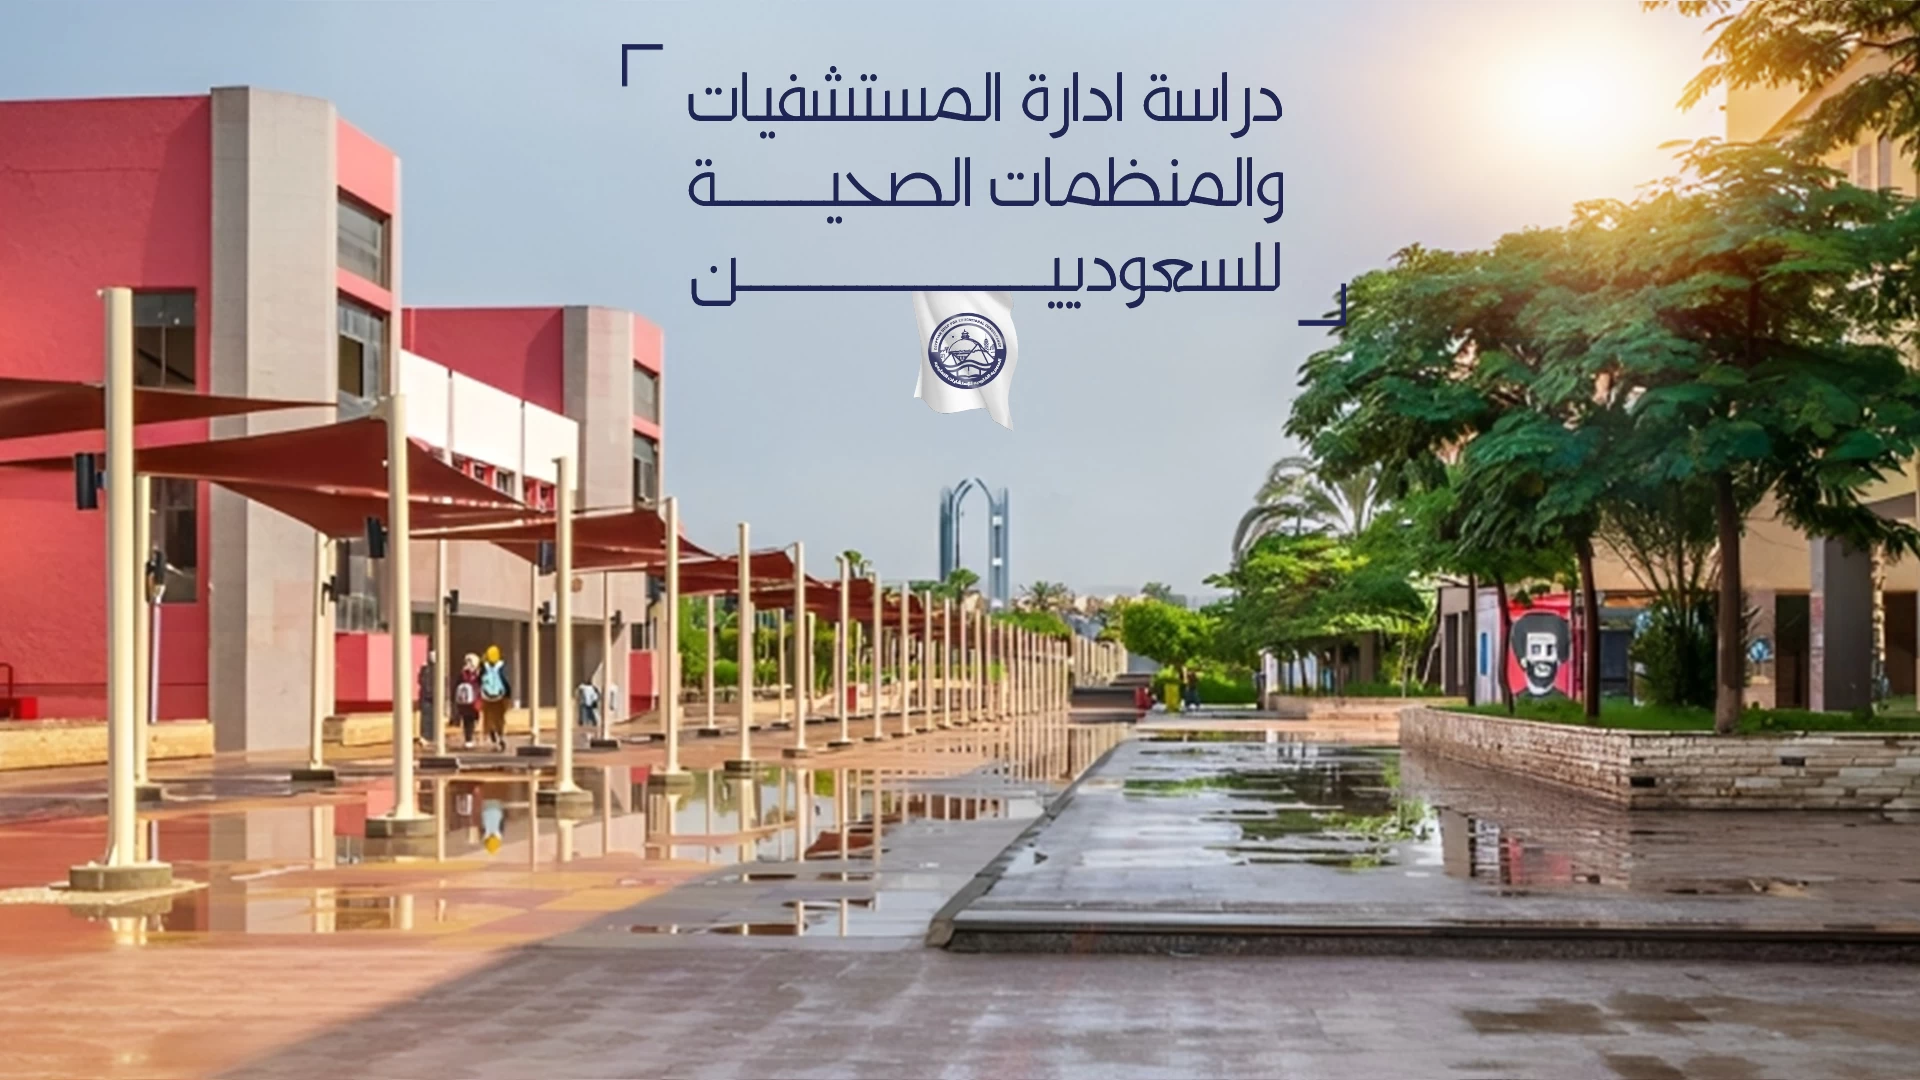 دراسة ادارة المستشفيات والمنظمات الصحية للسعوديين